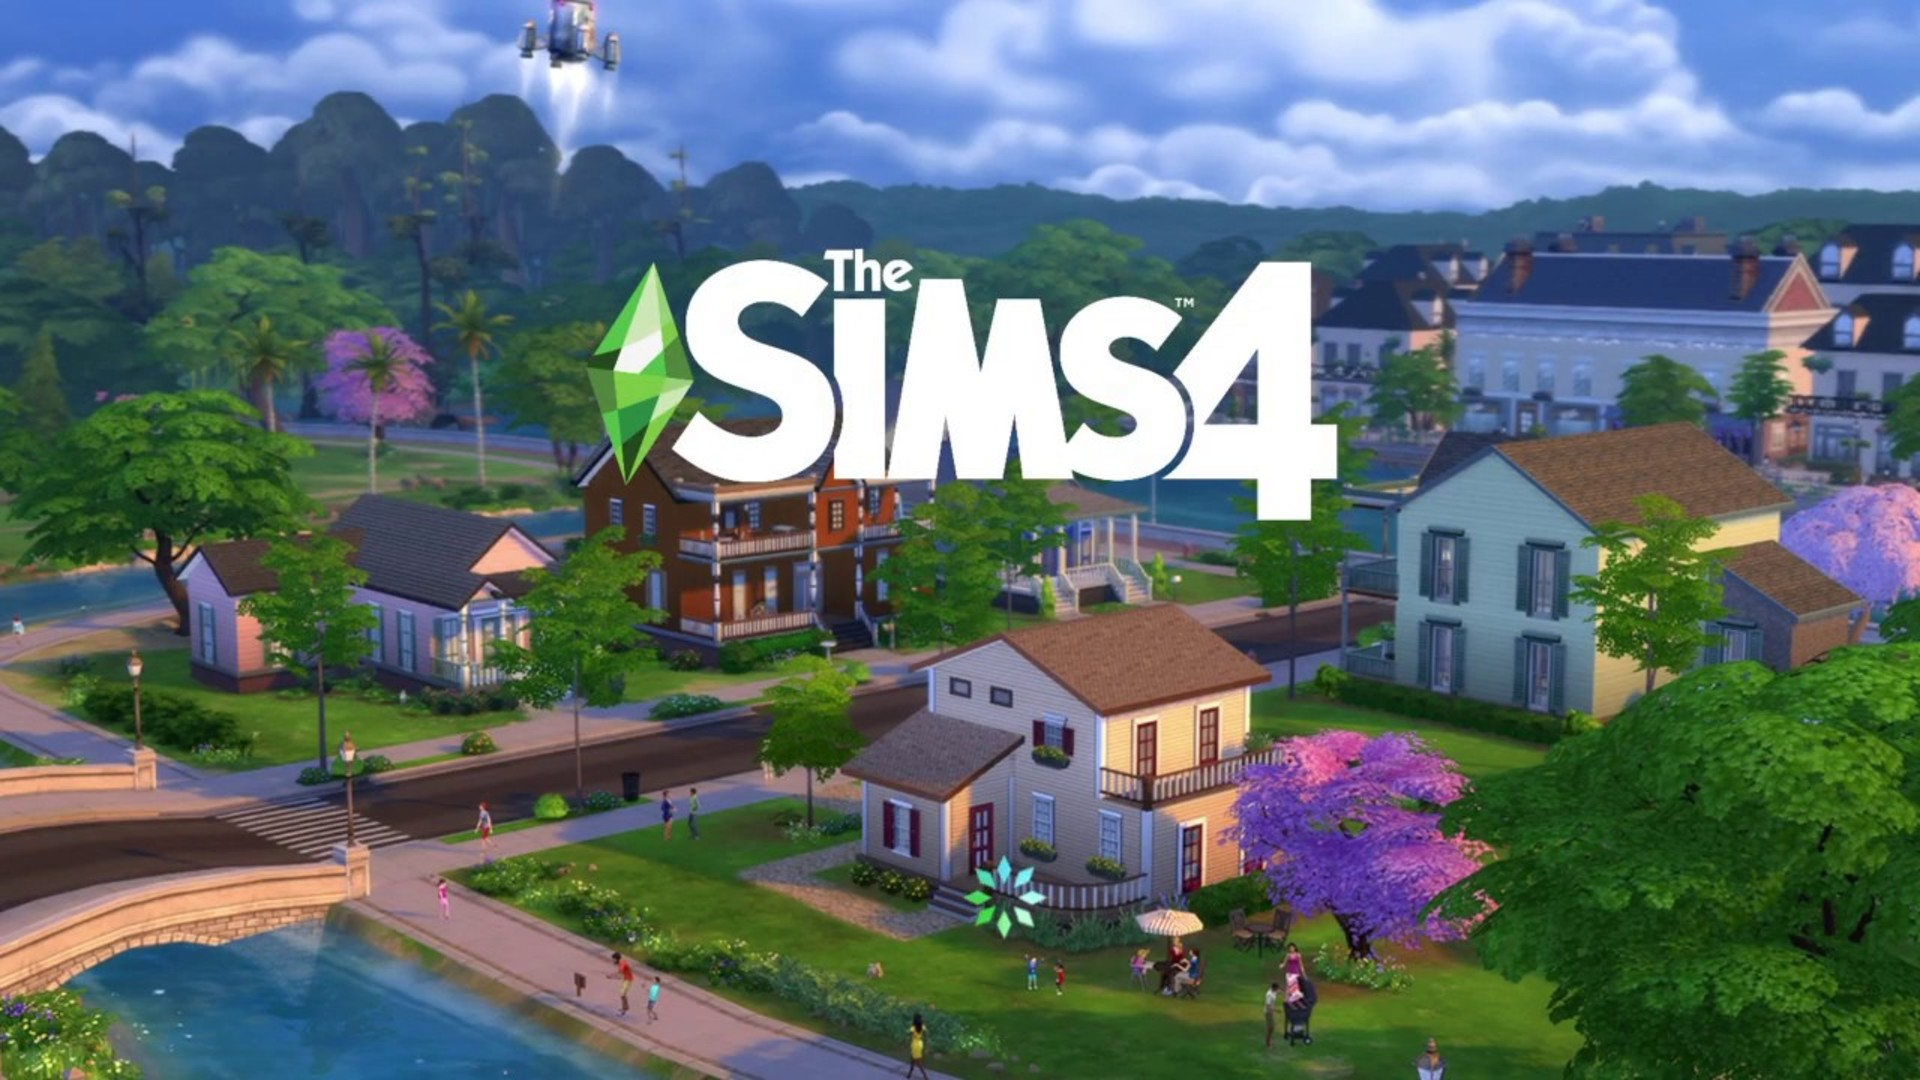 The Sims 4-ի համար երկու նոր լրացումներ են ներկայացվել